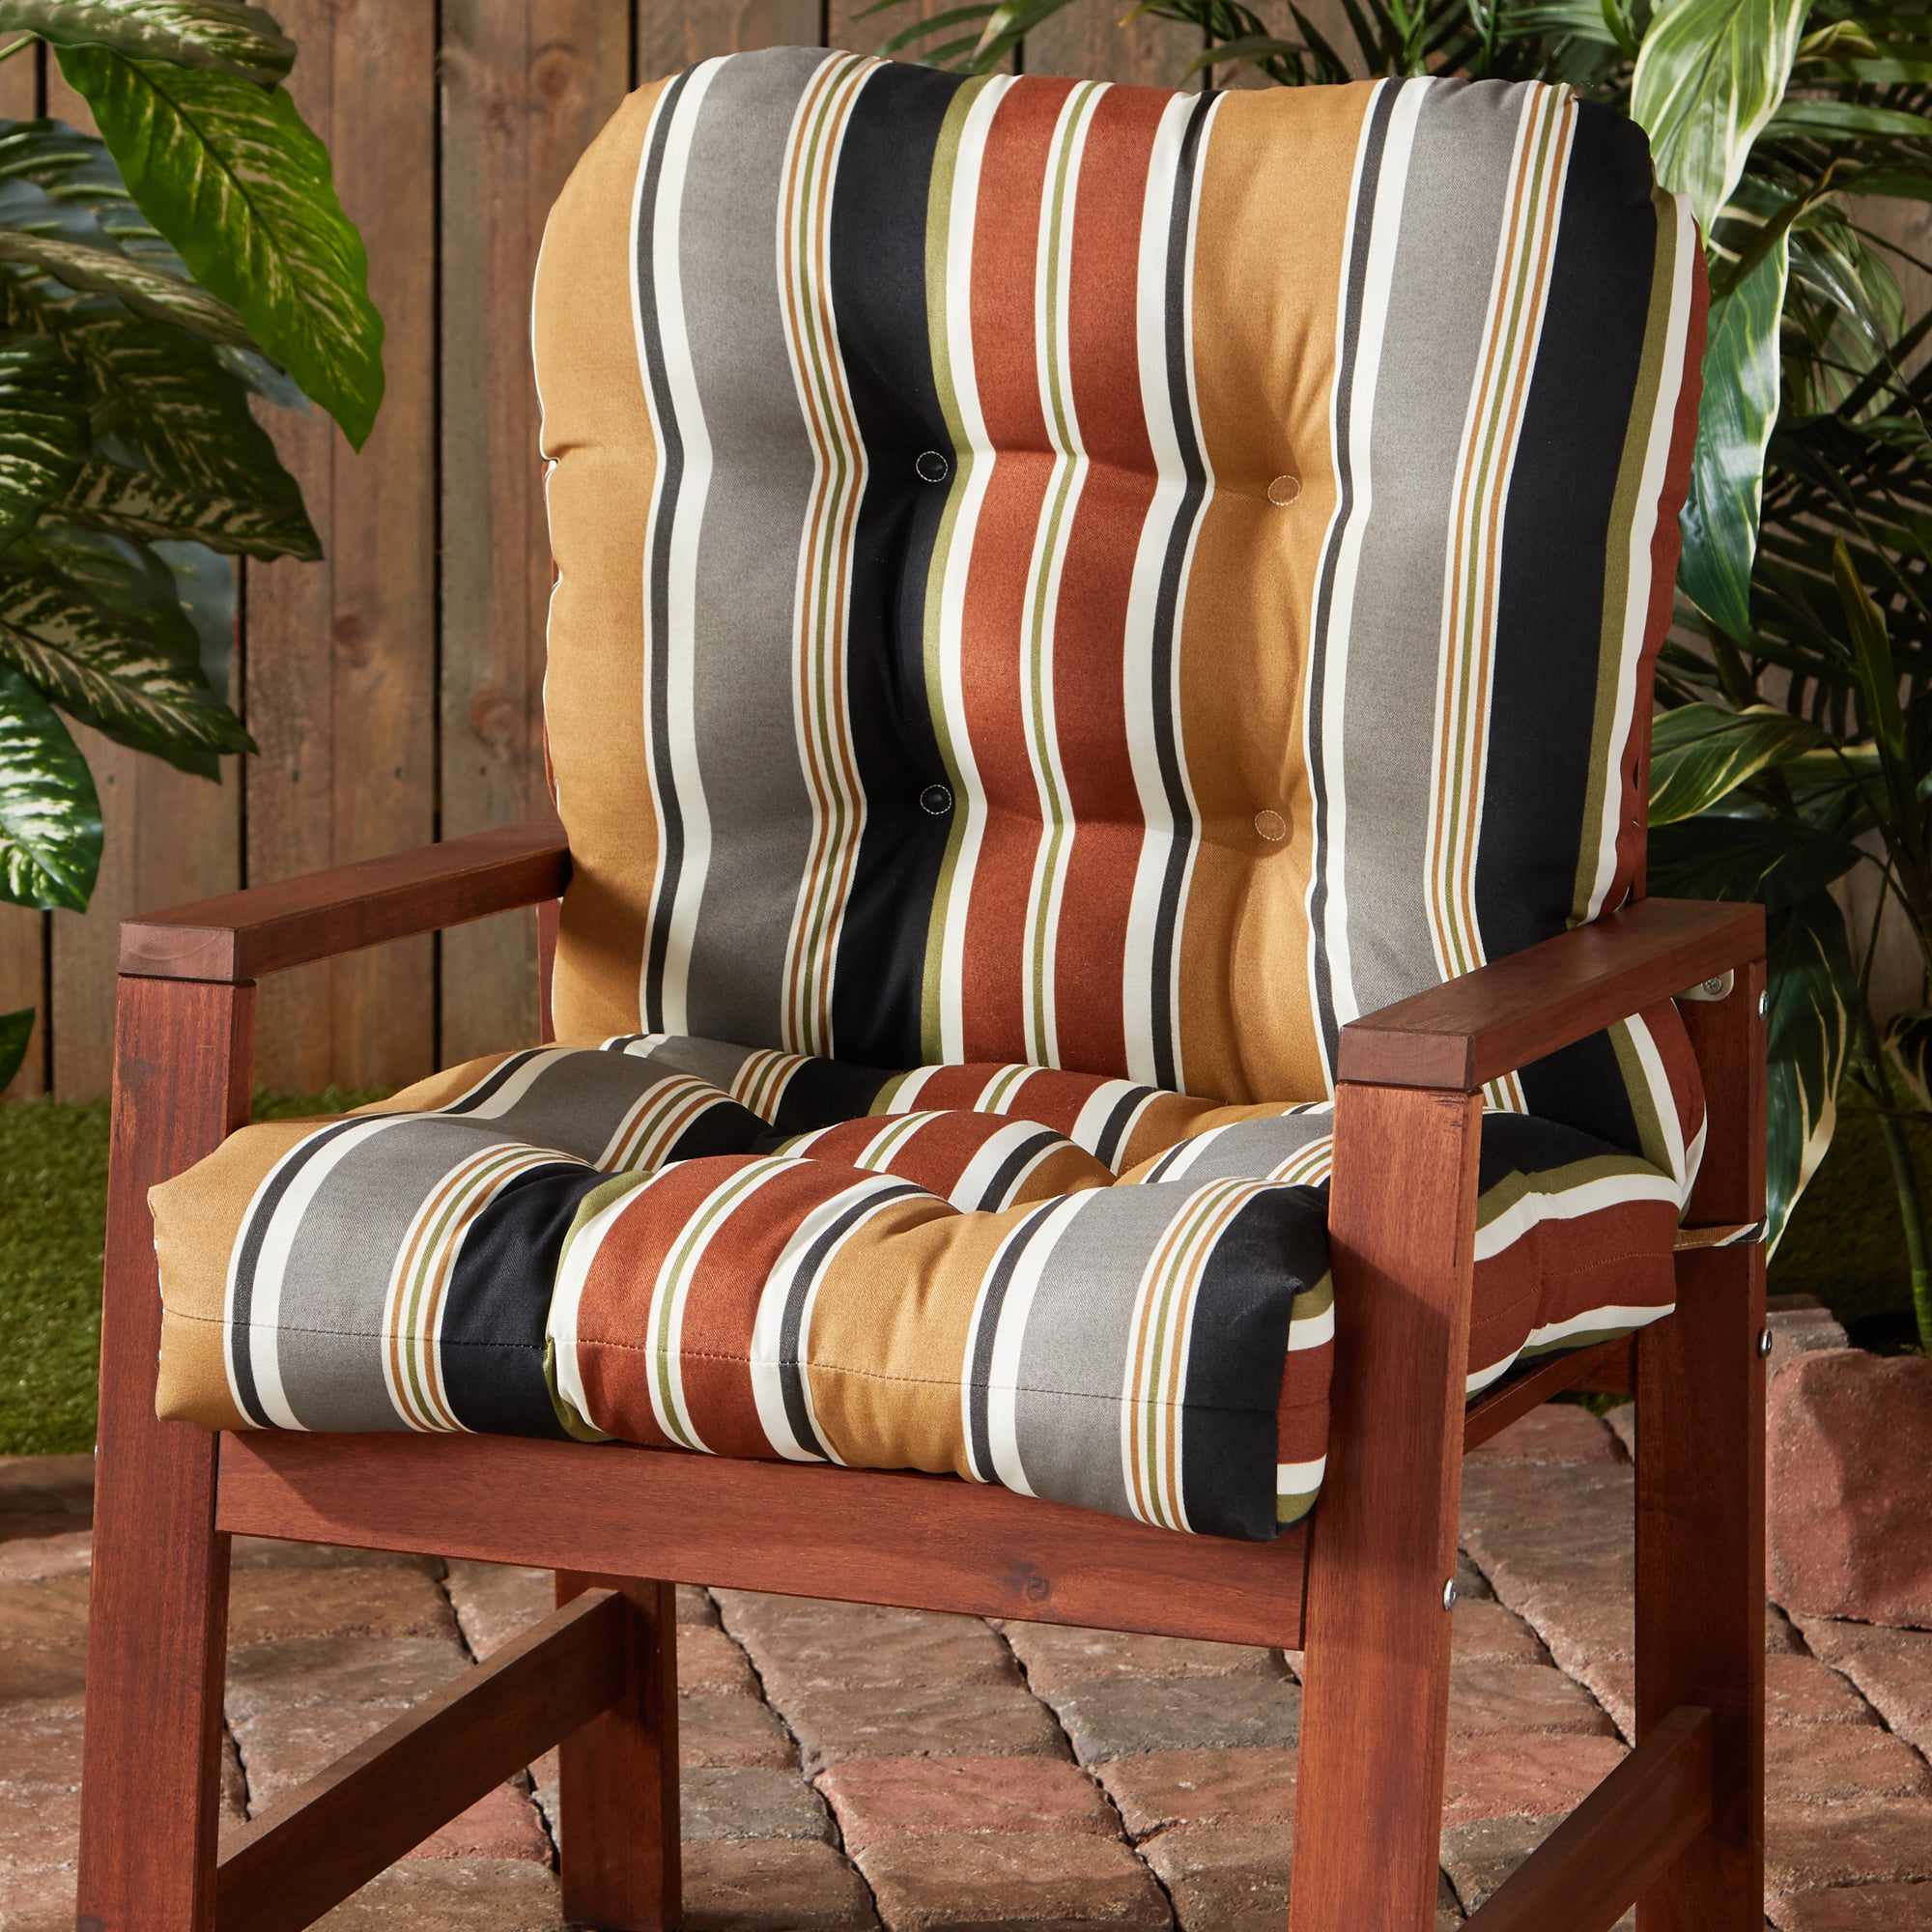 Patio Chair Seat Cushions Canada - Chair Outdoor Cushion Brick Walmart ...